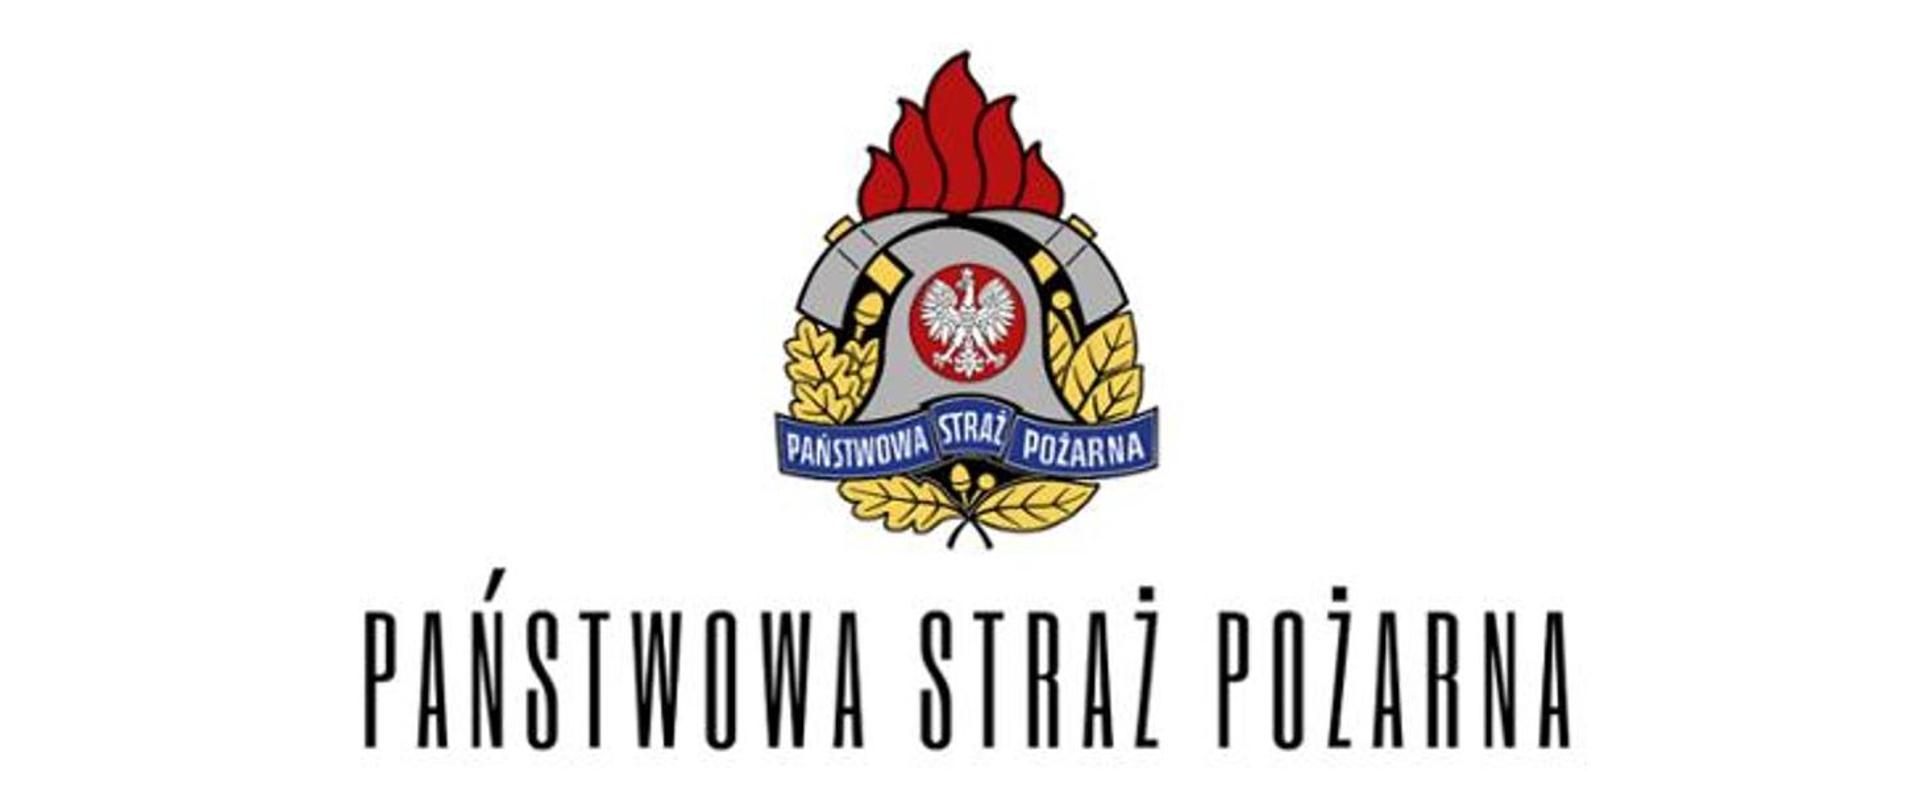 Logotyp państwowej straży pożarnej